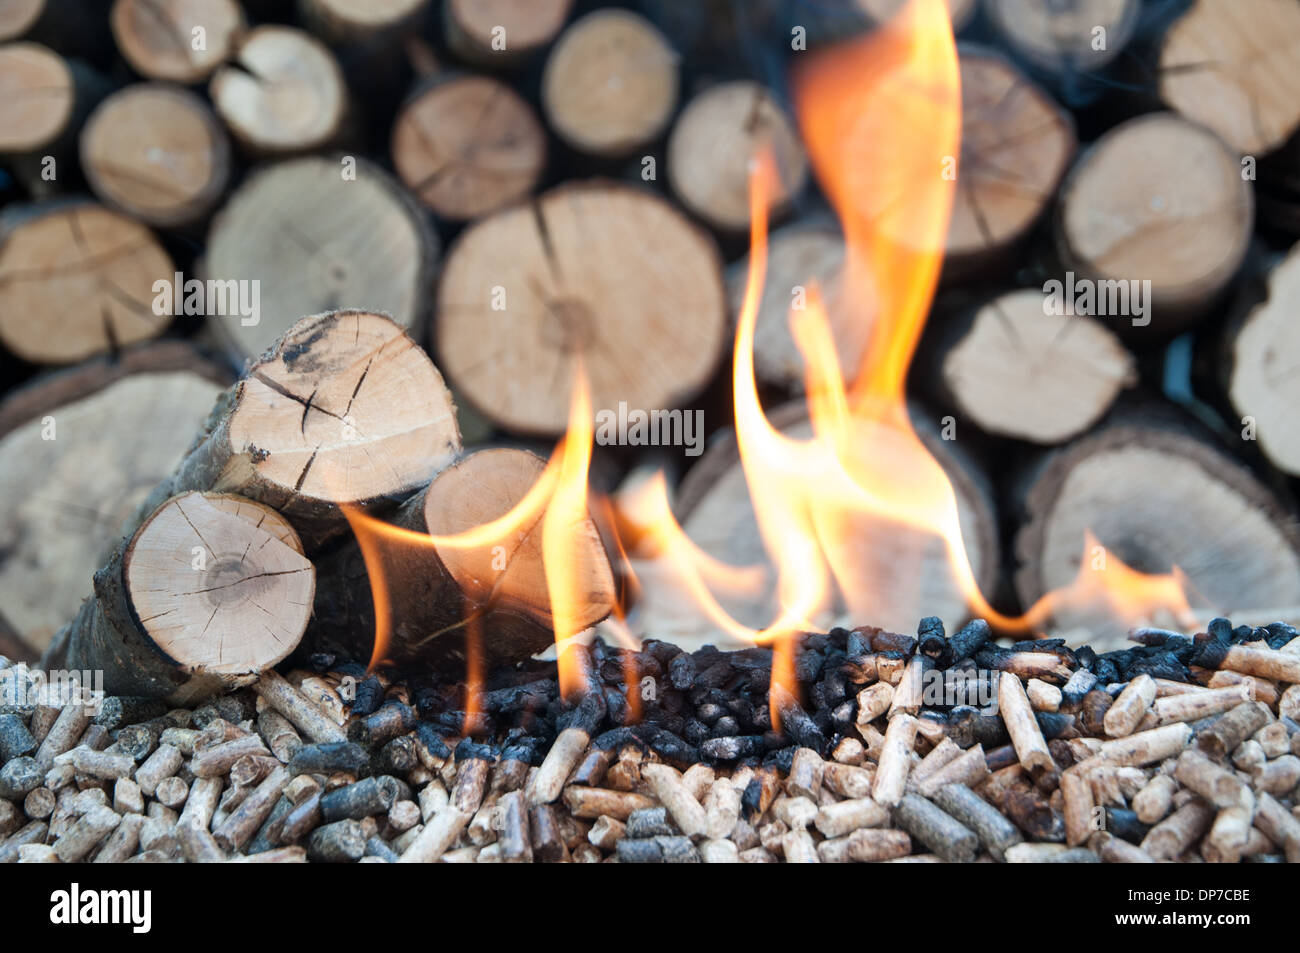 Eiche und Sonnenblume Pellets in Flammen-Stock Bild Stockfoto